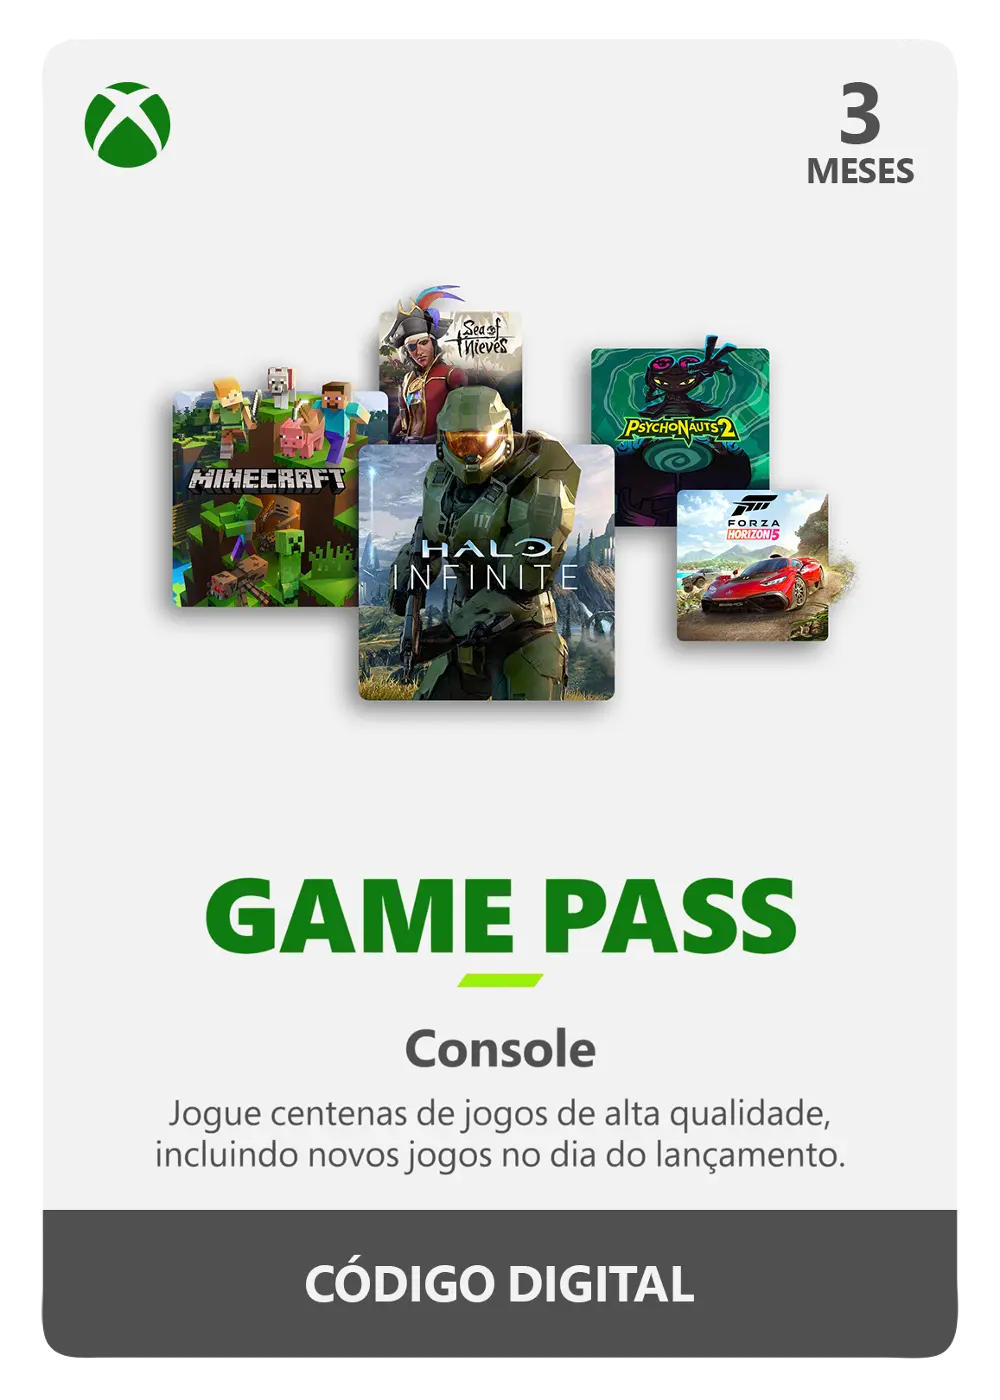 Assinatura xbox game pass ultimate 3 meses pc completa - Escorrega o Preço